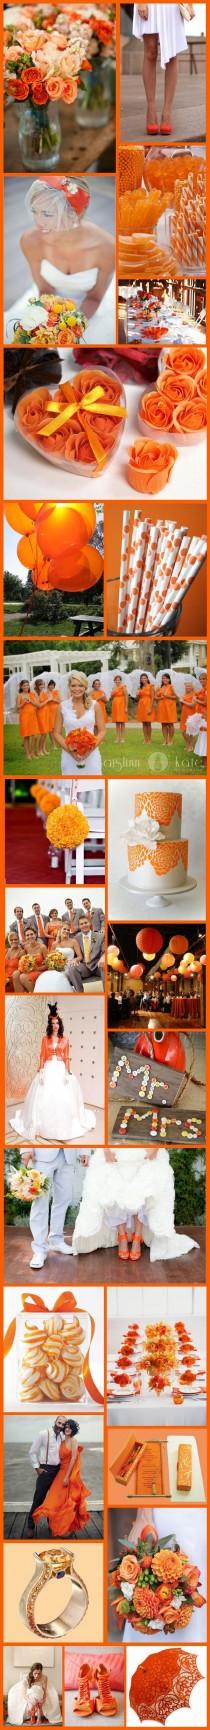 wedding photo - Wednesday Wedding Inspiration: Citric Orange